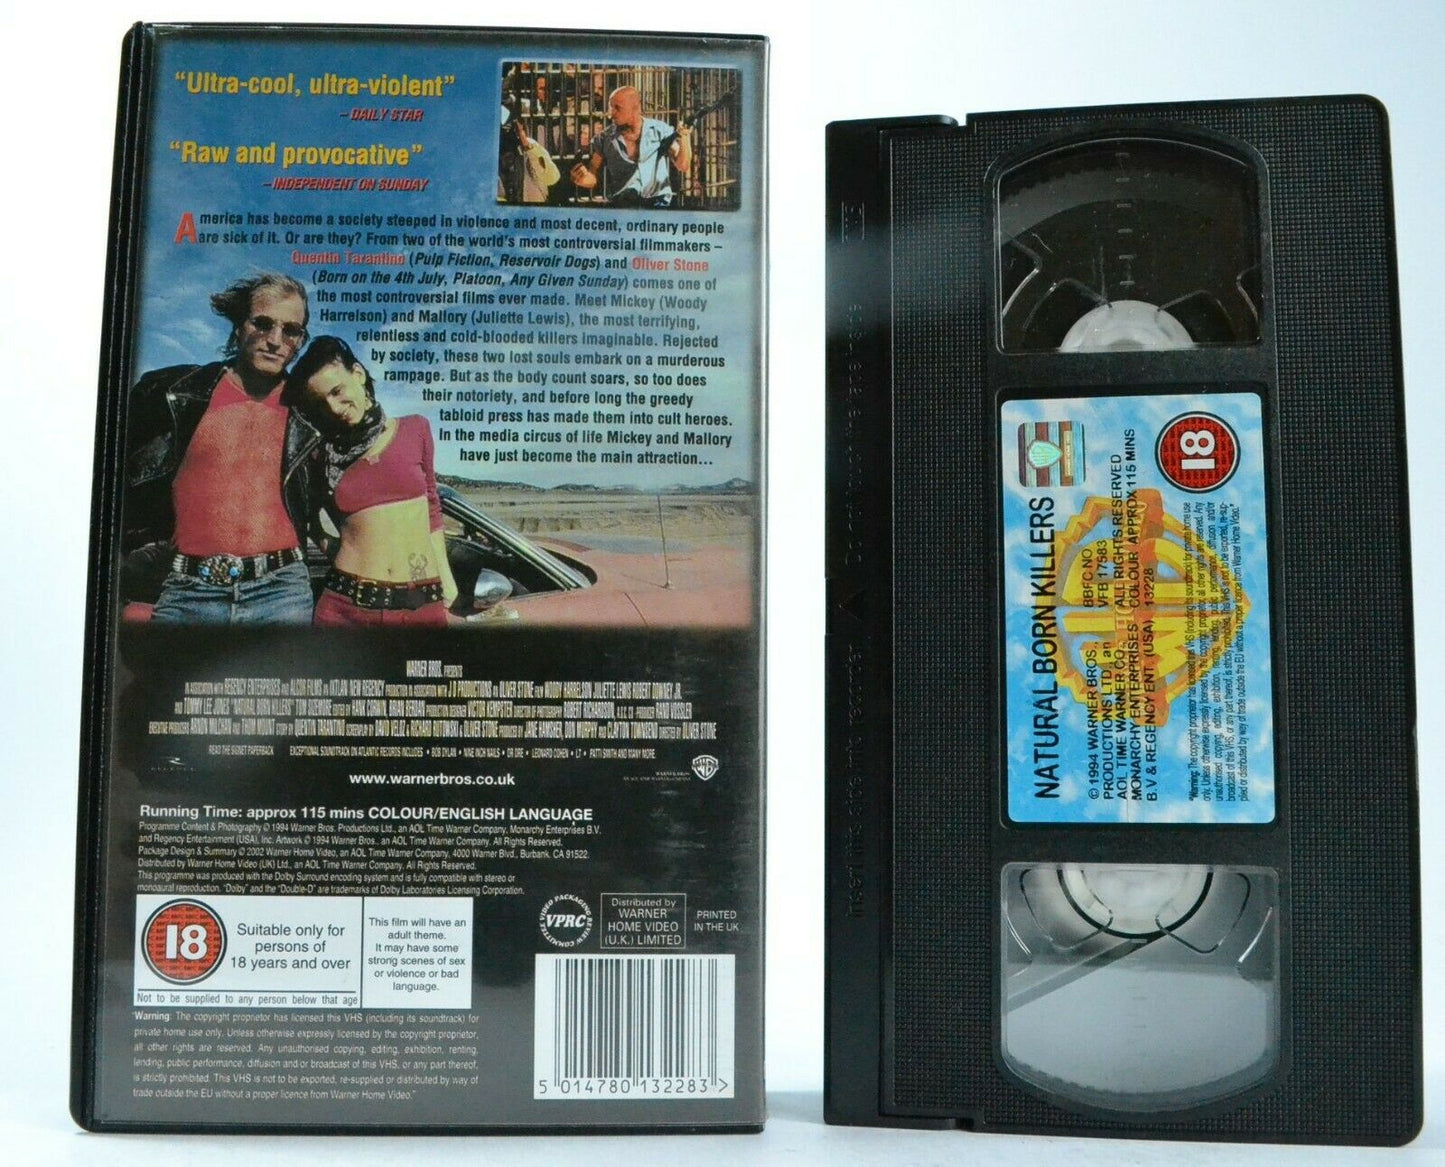 Natural Born Killers: W. Harrelson & J. Lewis - Thriller [Oliver Stone] - VHS-